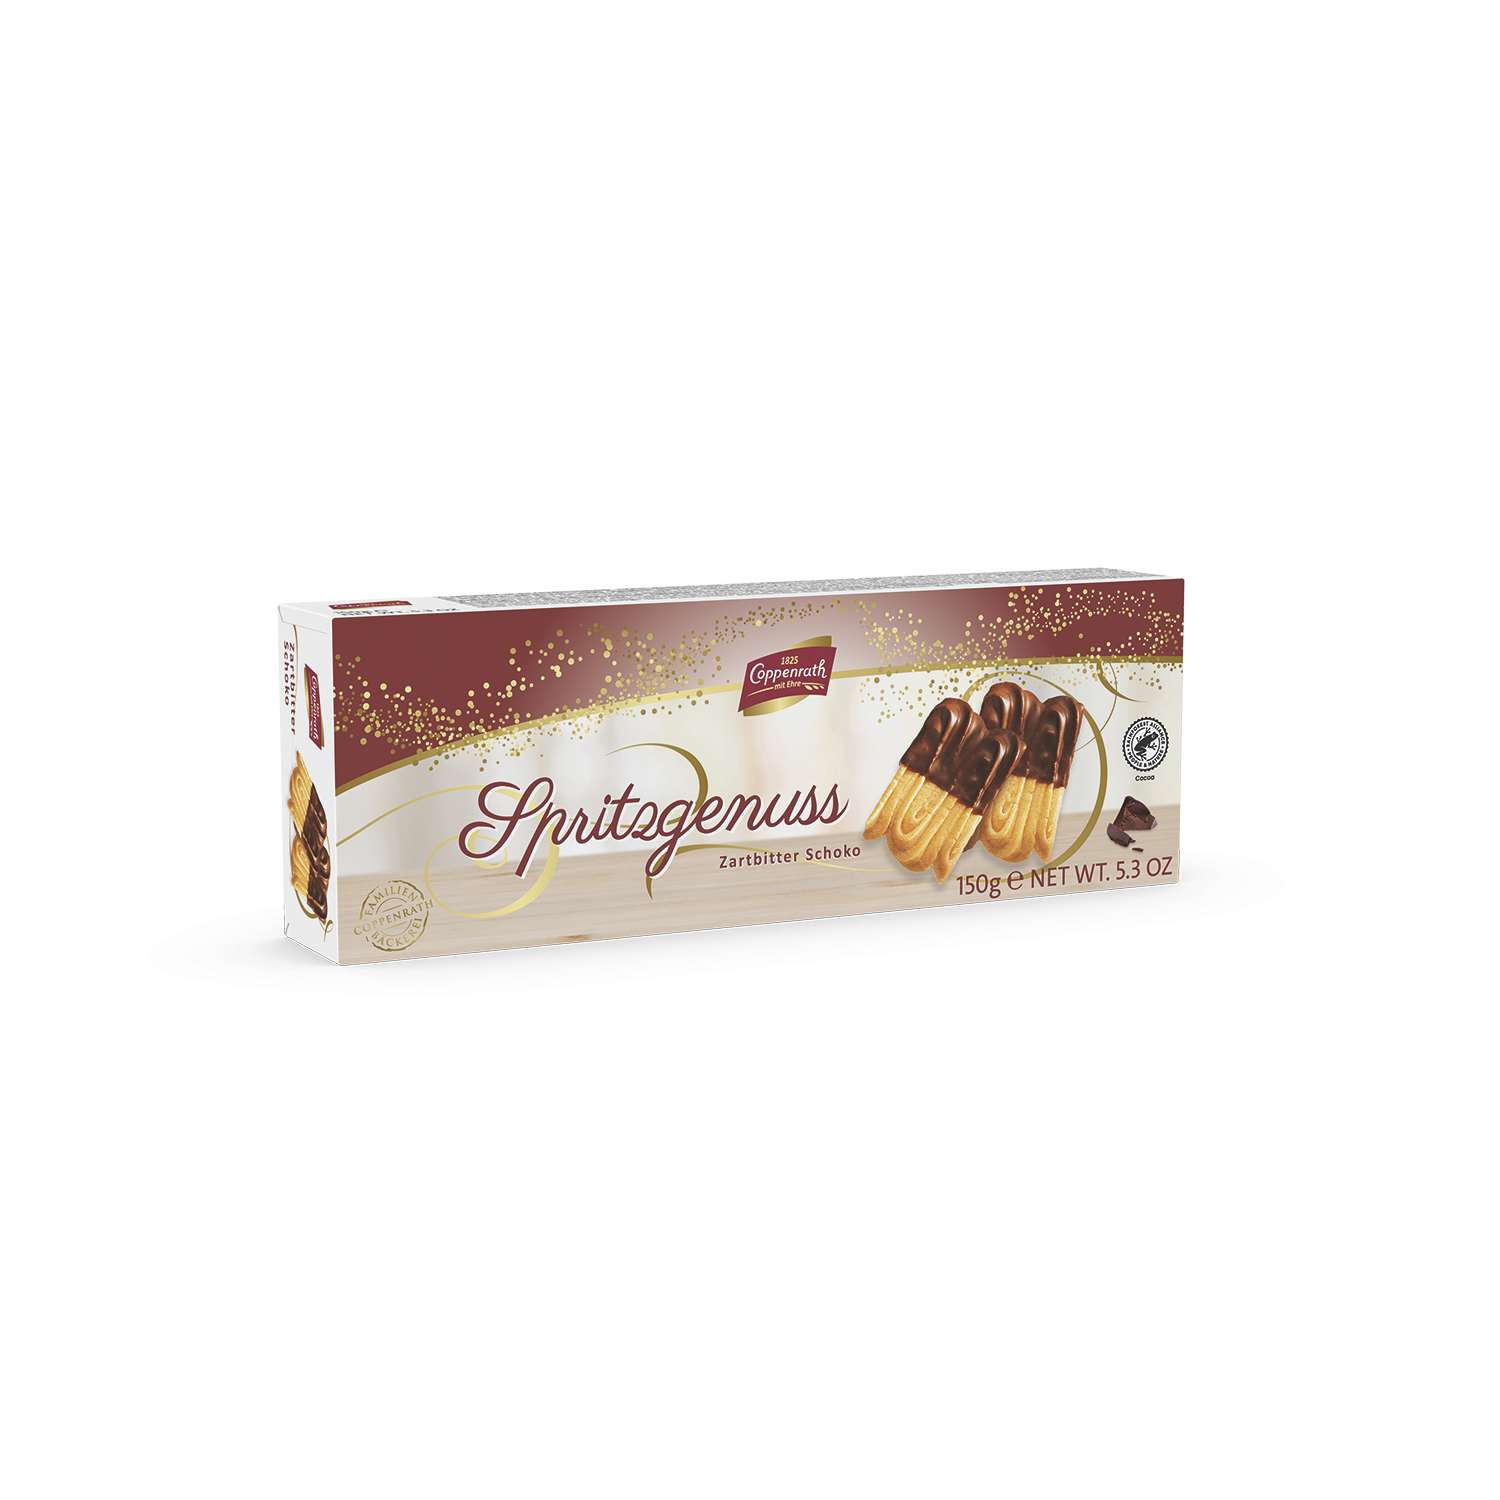 Печенье Coppenrath песочное с темным шоколадом «Spritz-Genuss» 150 грамм - фото 1